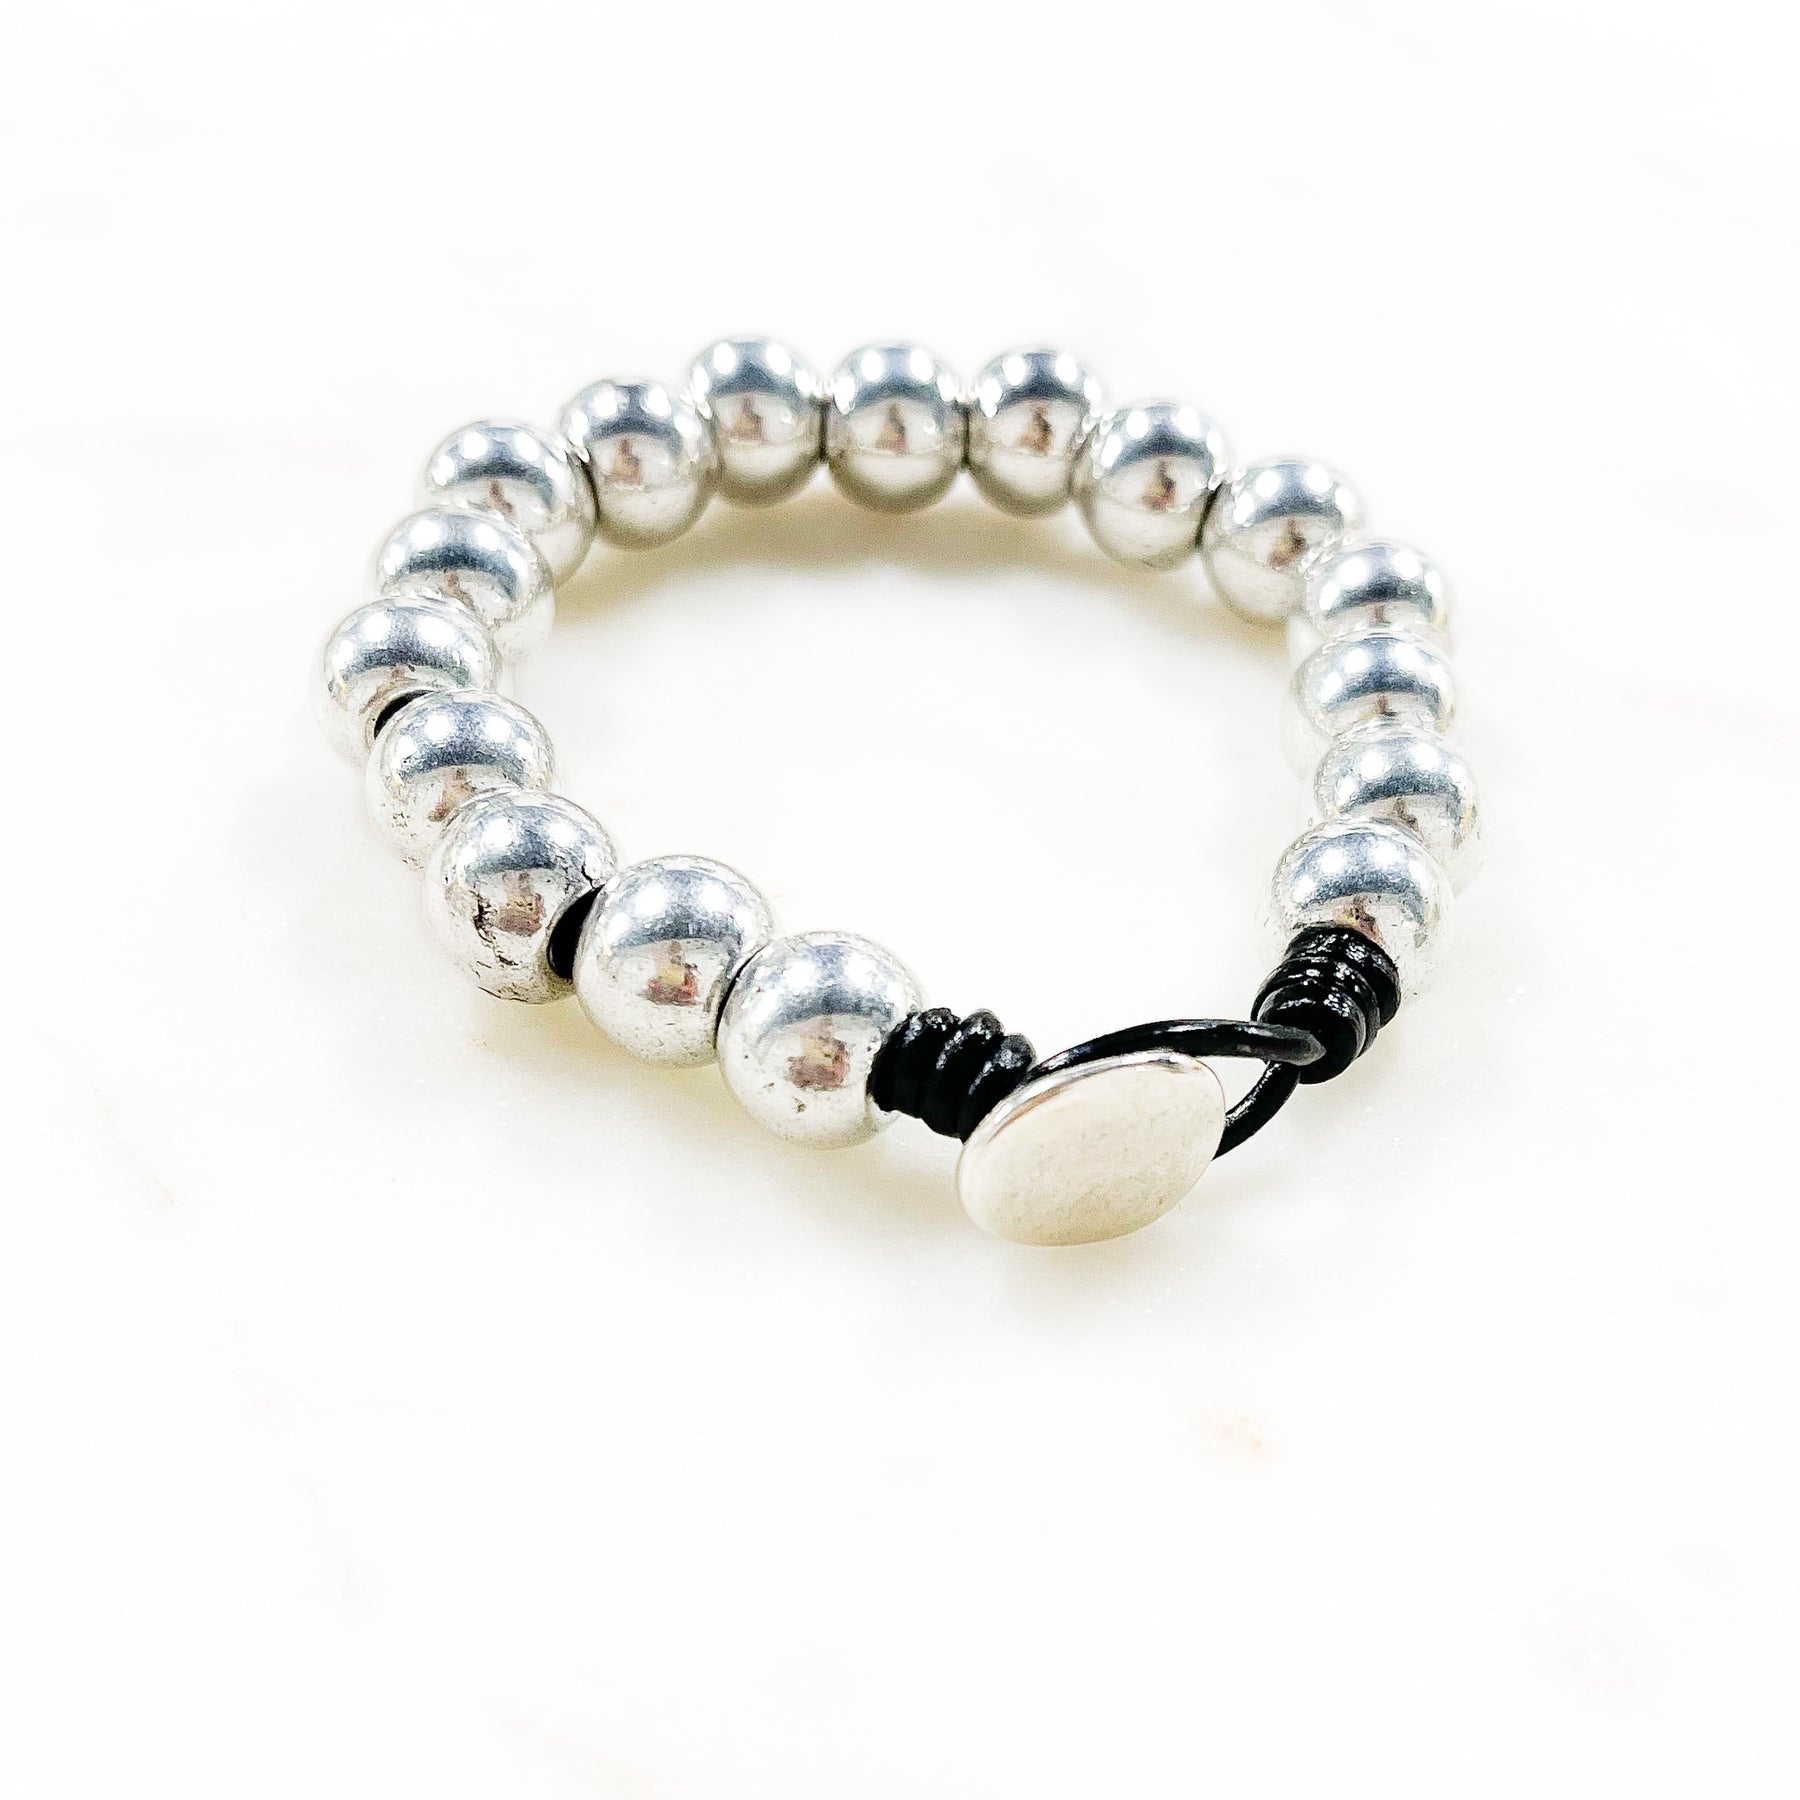 Tenerife Perla - ¿Conoces las perlas Edison? Nuestra pulsera ALISIO engarza  una de las perlas de agua dulce más exclusivas en un moderno diseño de  polipiel y plata de ley. Ven a